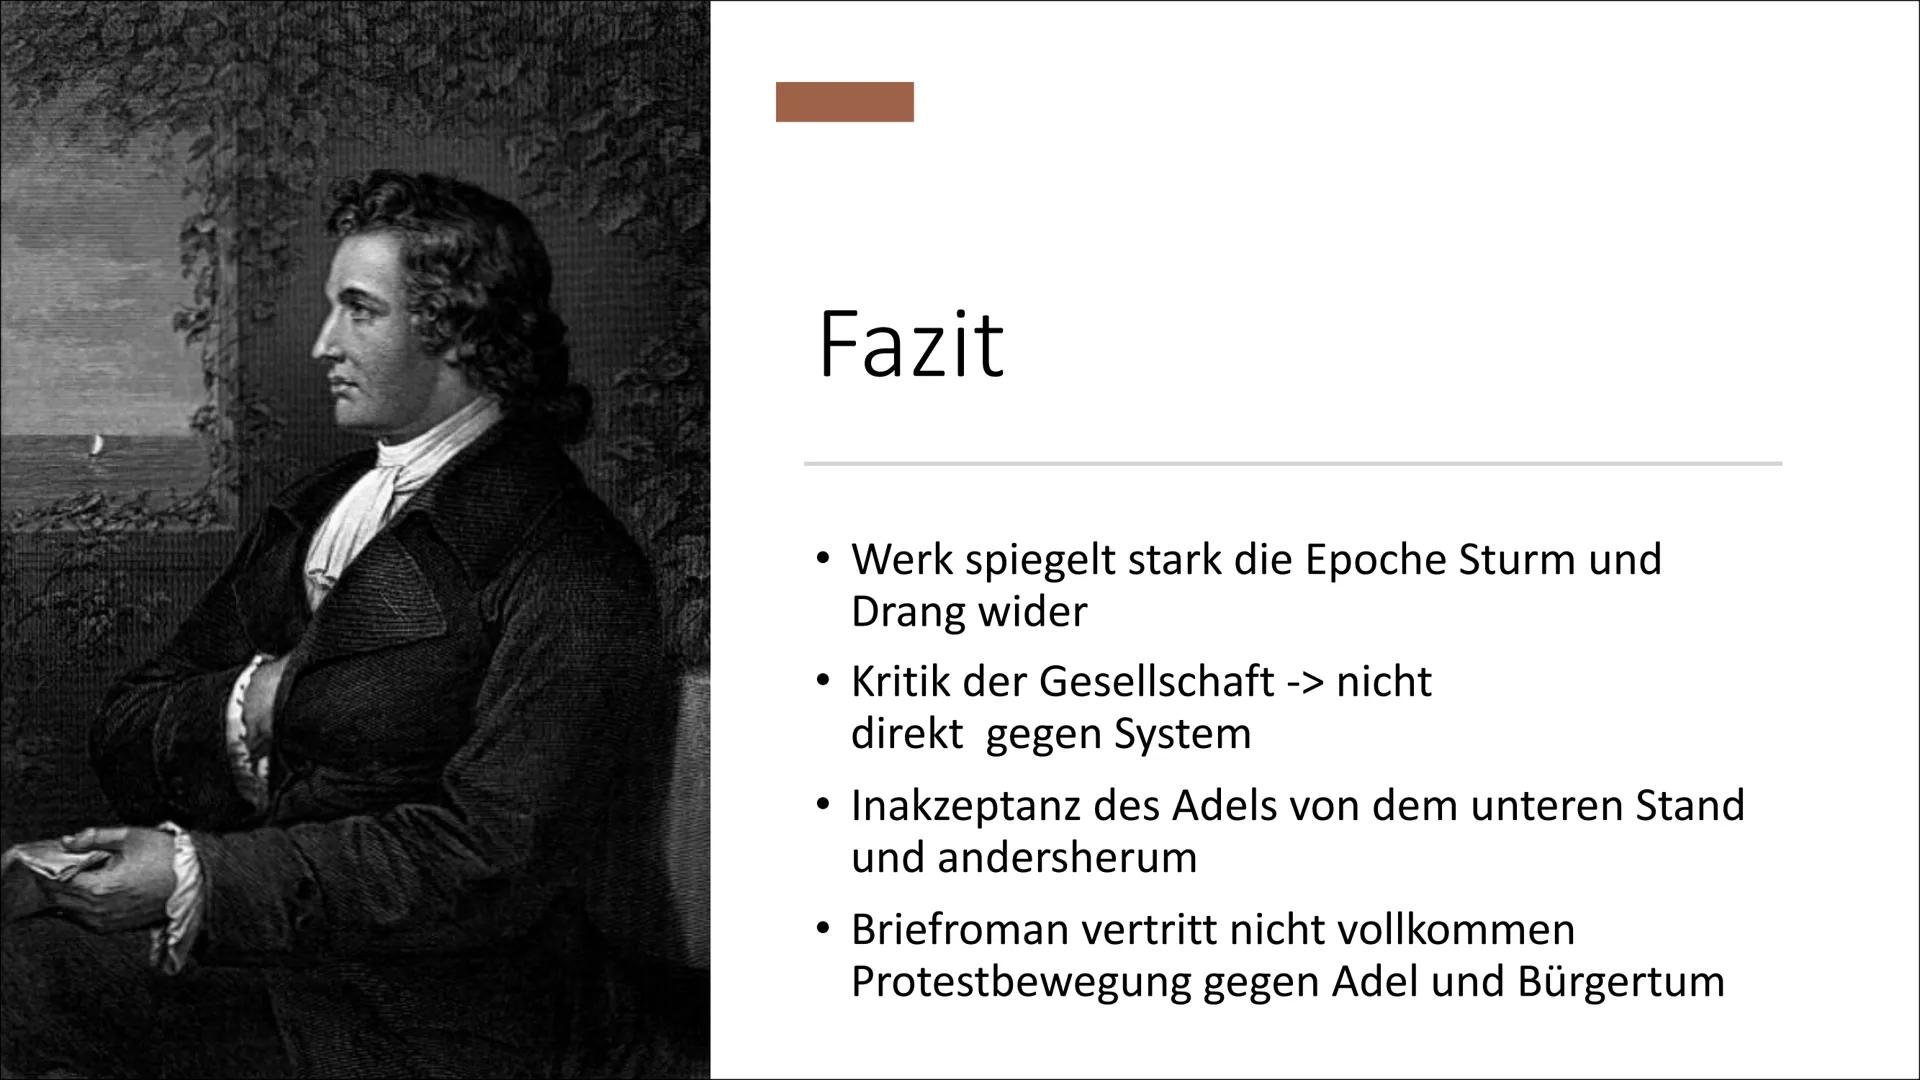 DIE LEIDEN DES JUNGEN
WERTHERS
Johann Wolfgang von Goethe
Ines, Kaman und Kira Inhalt
Bezug zum Autor
INHALTSVERZEICHNIS
Personenkonstellati